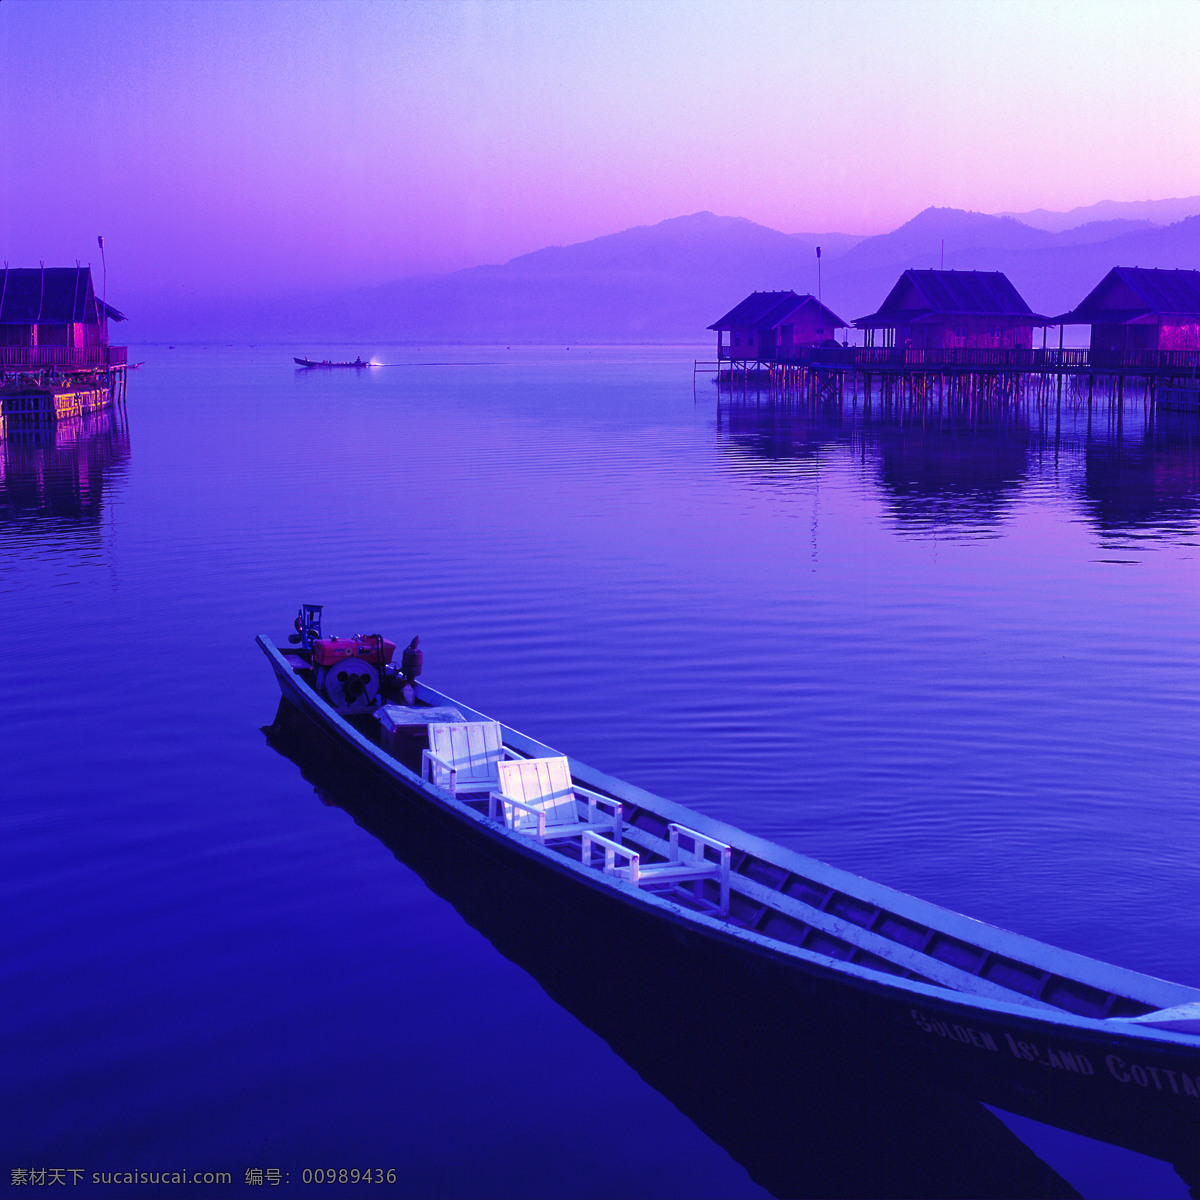 马尔代夫 旅游 船 海上 傍晚 水上的房子 远山 宁静 安静 休闲 旅游摄影 国外旅游 摄影图库